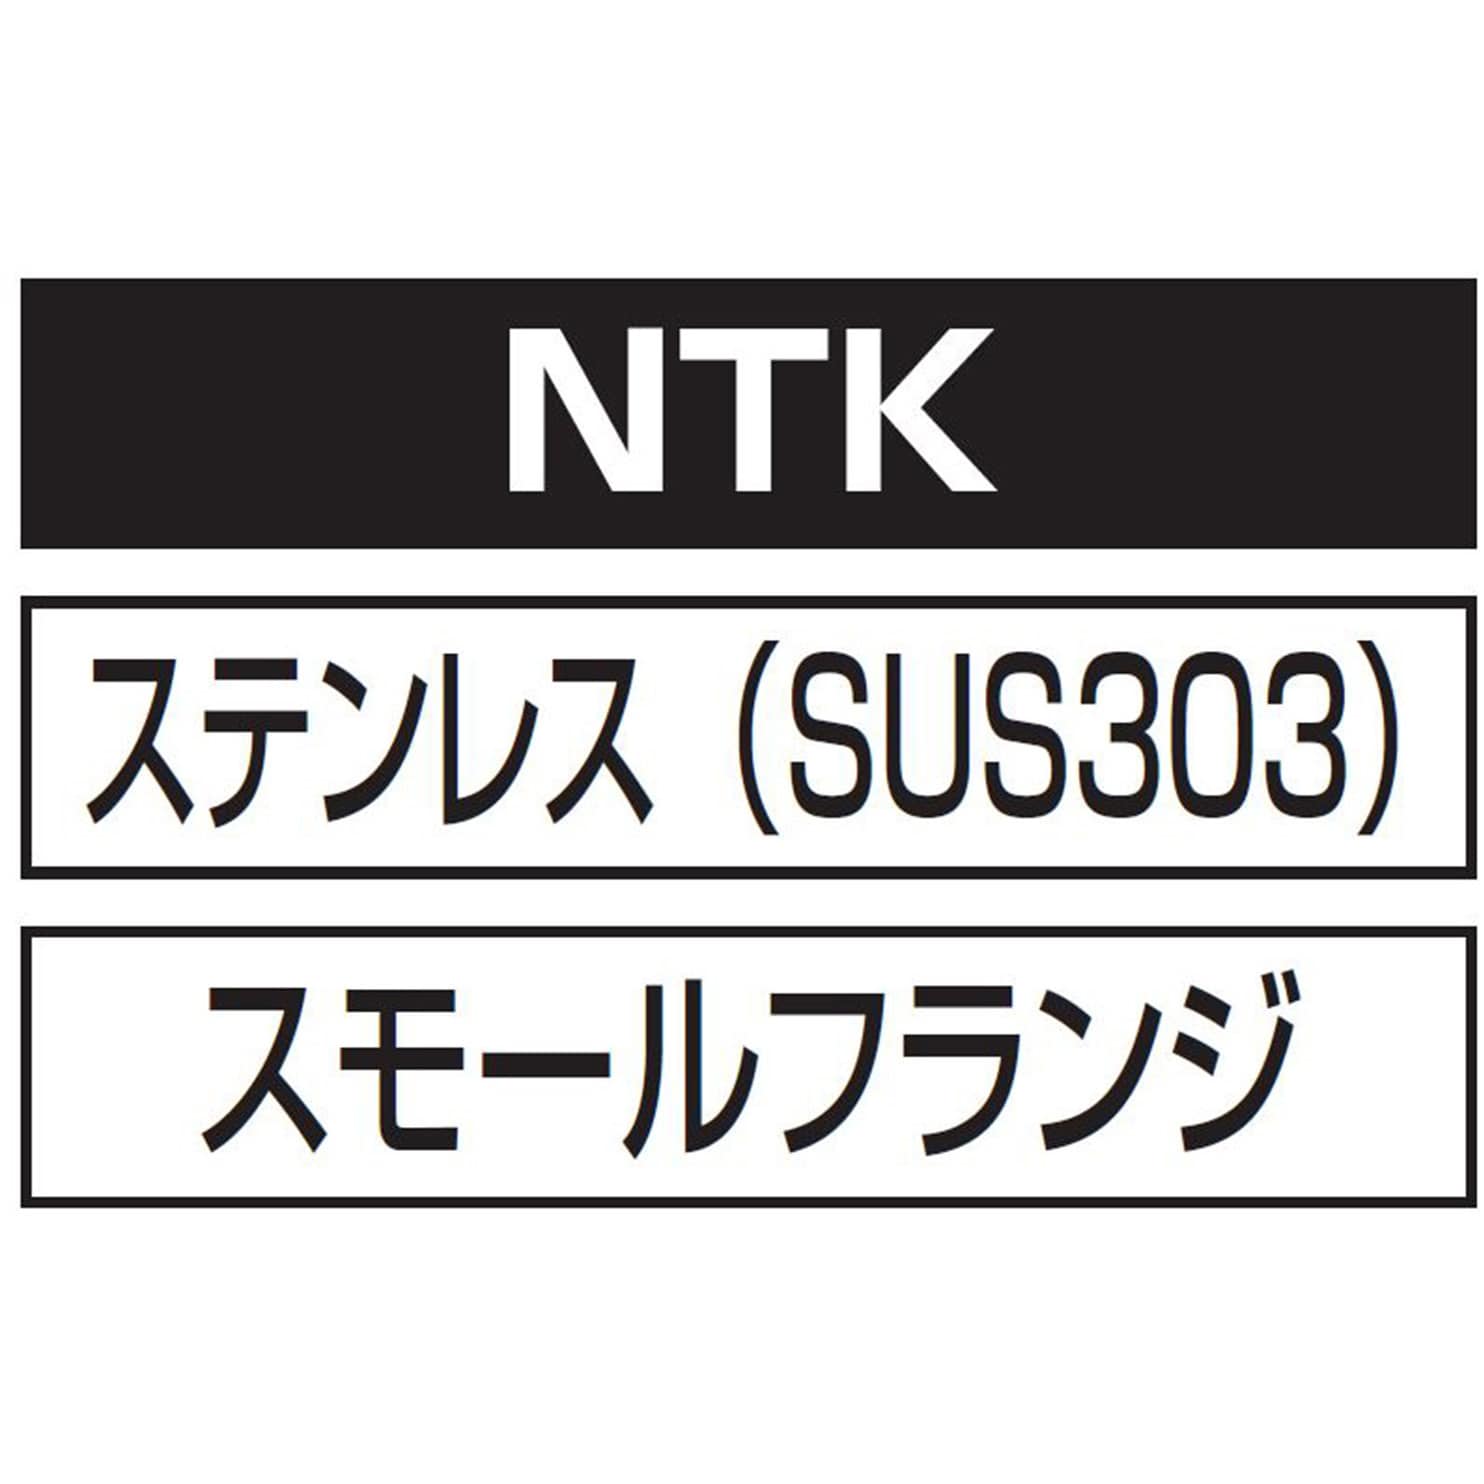 NTK5M30 エビナット(ステンレス・Kタイプ) 1パック(200個) ロブスター(ロブテックス) 【通販サイトMonotaRO】